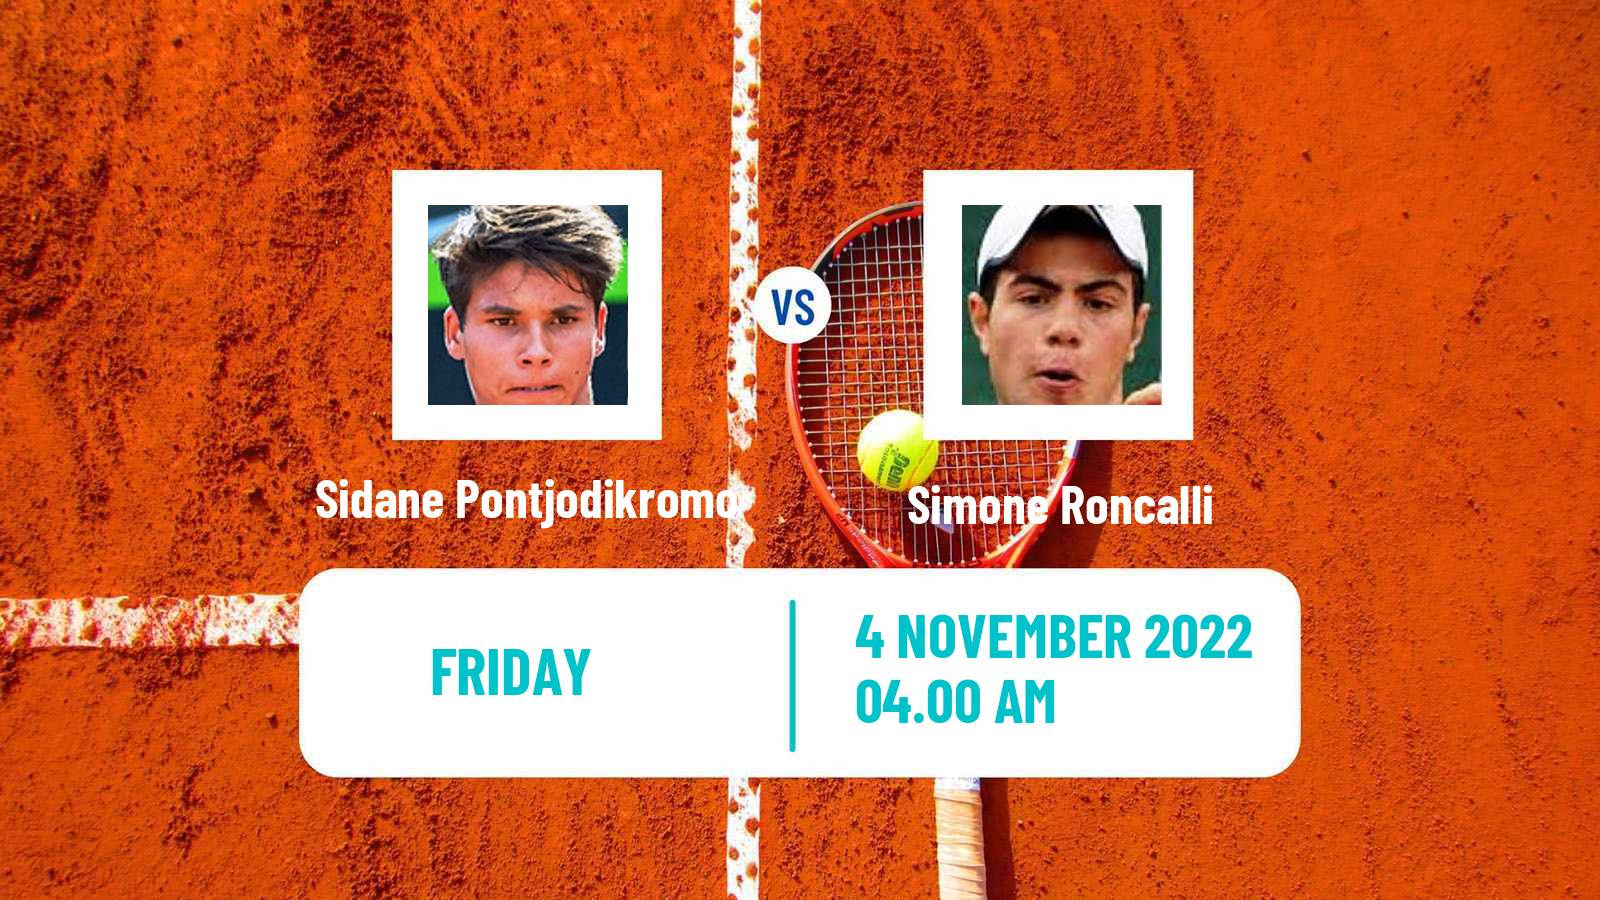 Tennis ITF Tournaments Sidane Pontjodikromo - Simone Roncalli